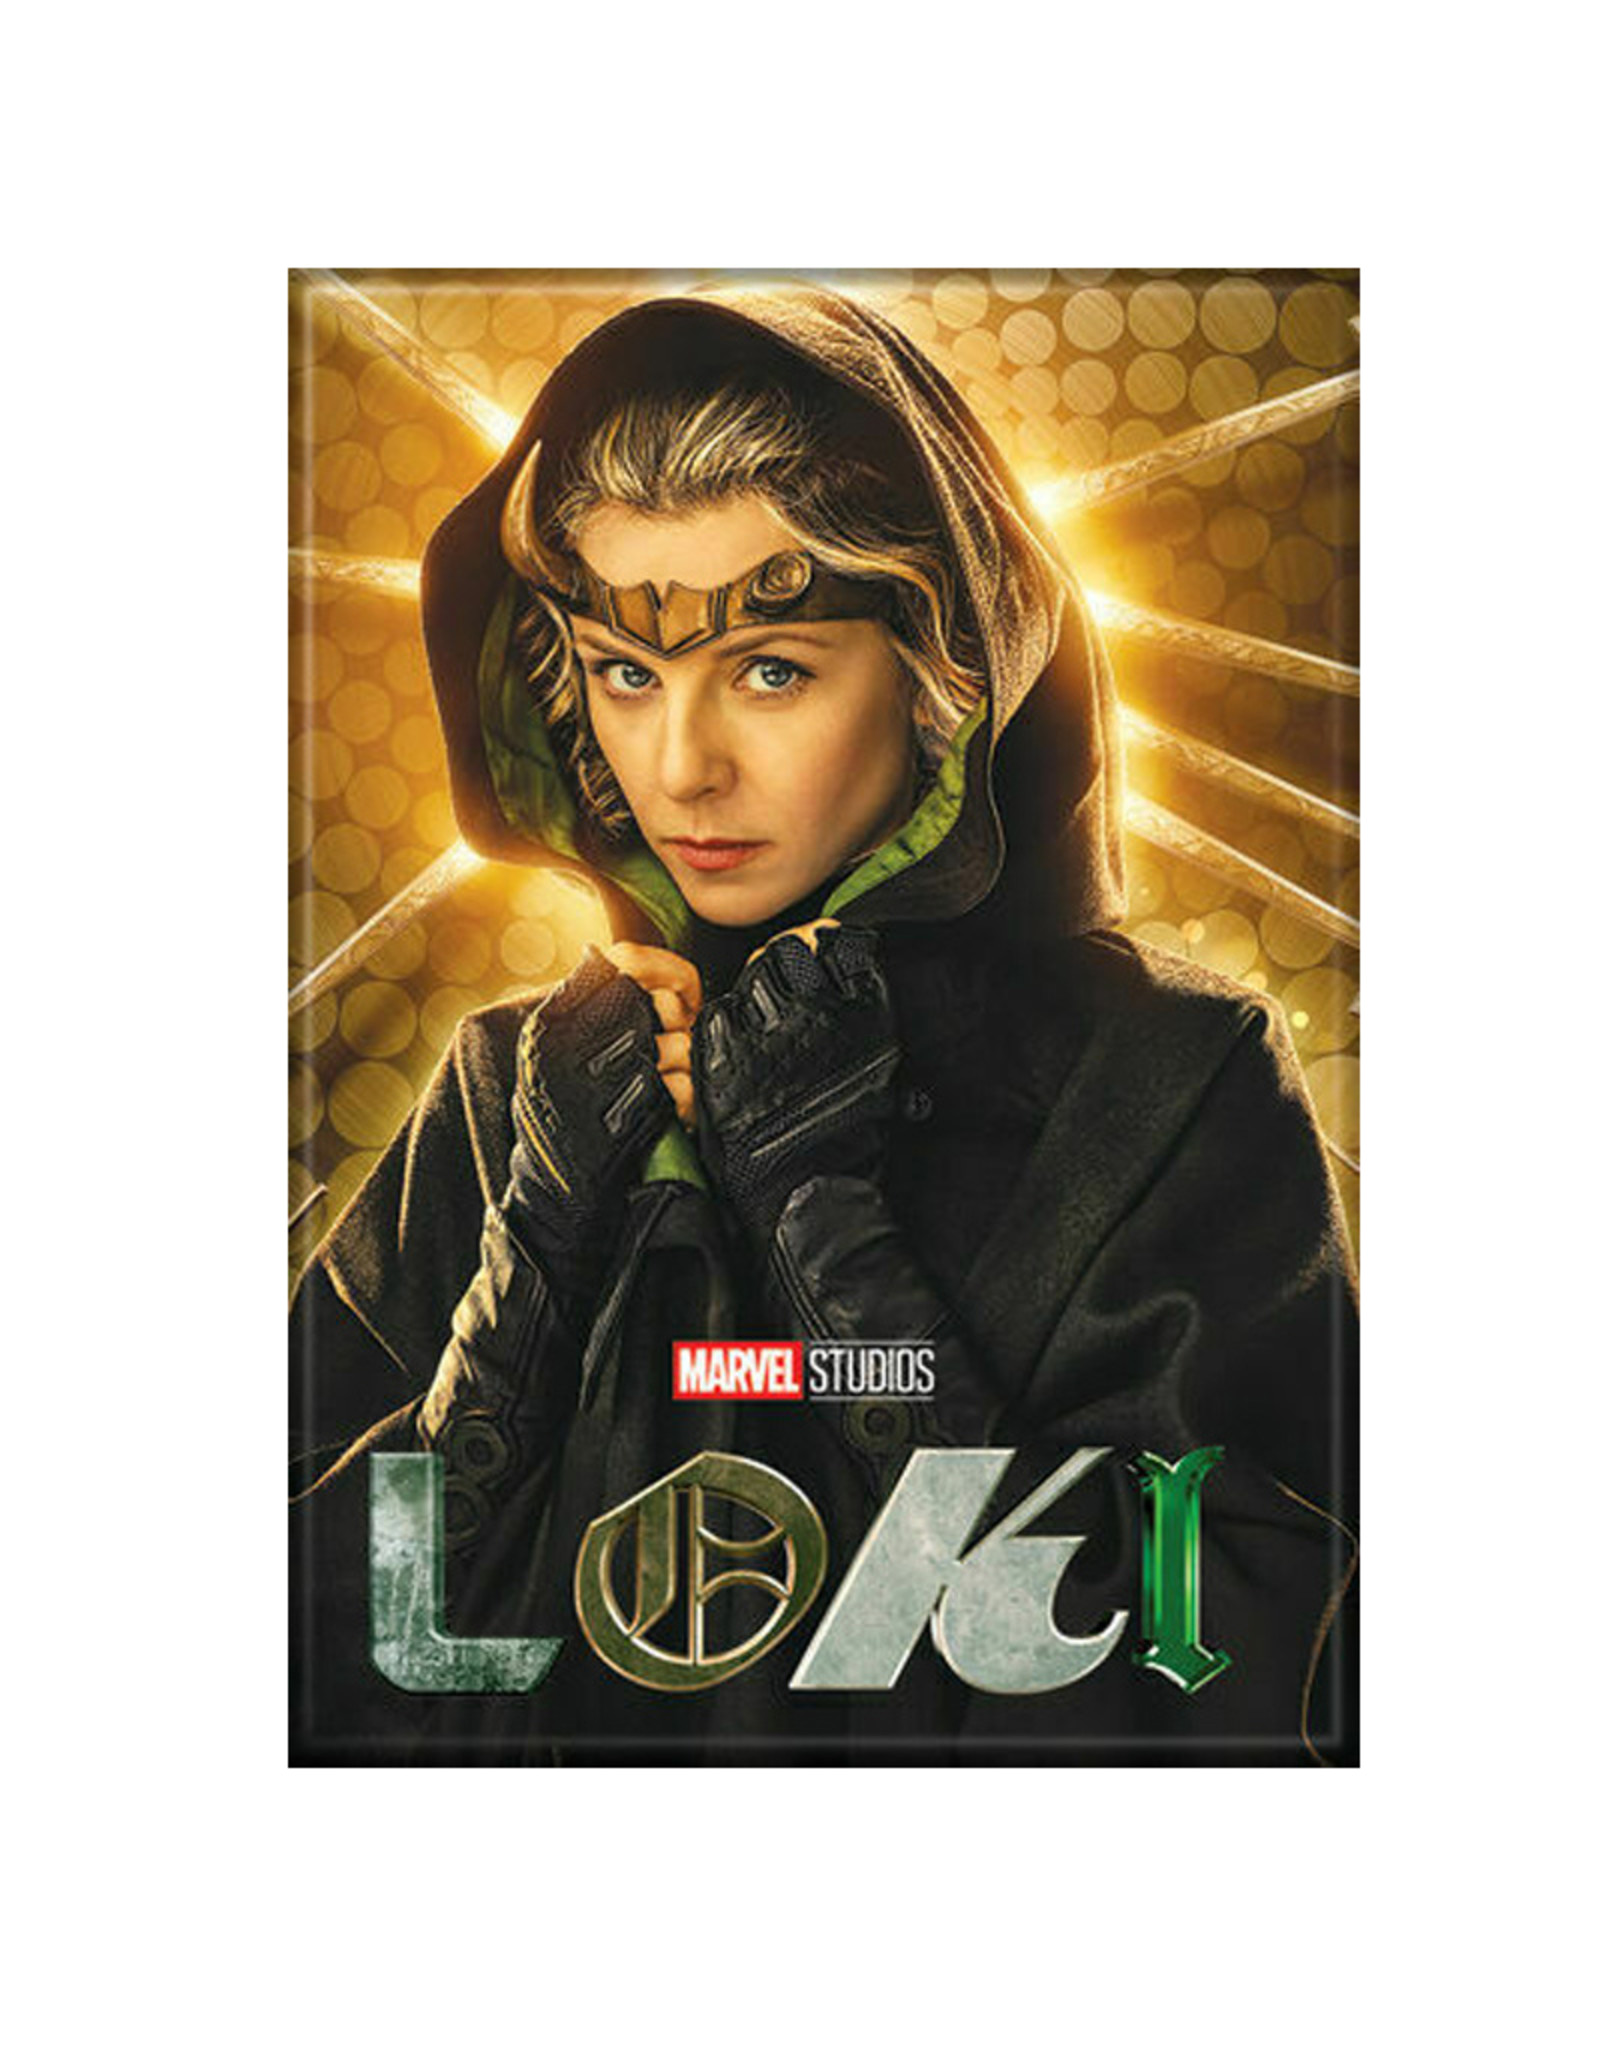 Ata-Boy Loki Sylvie Poster Magnet